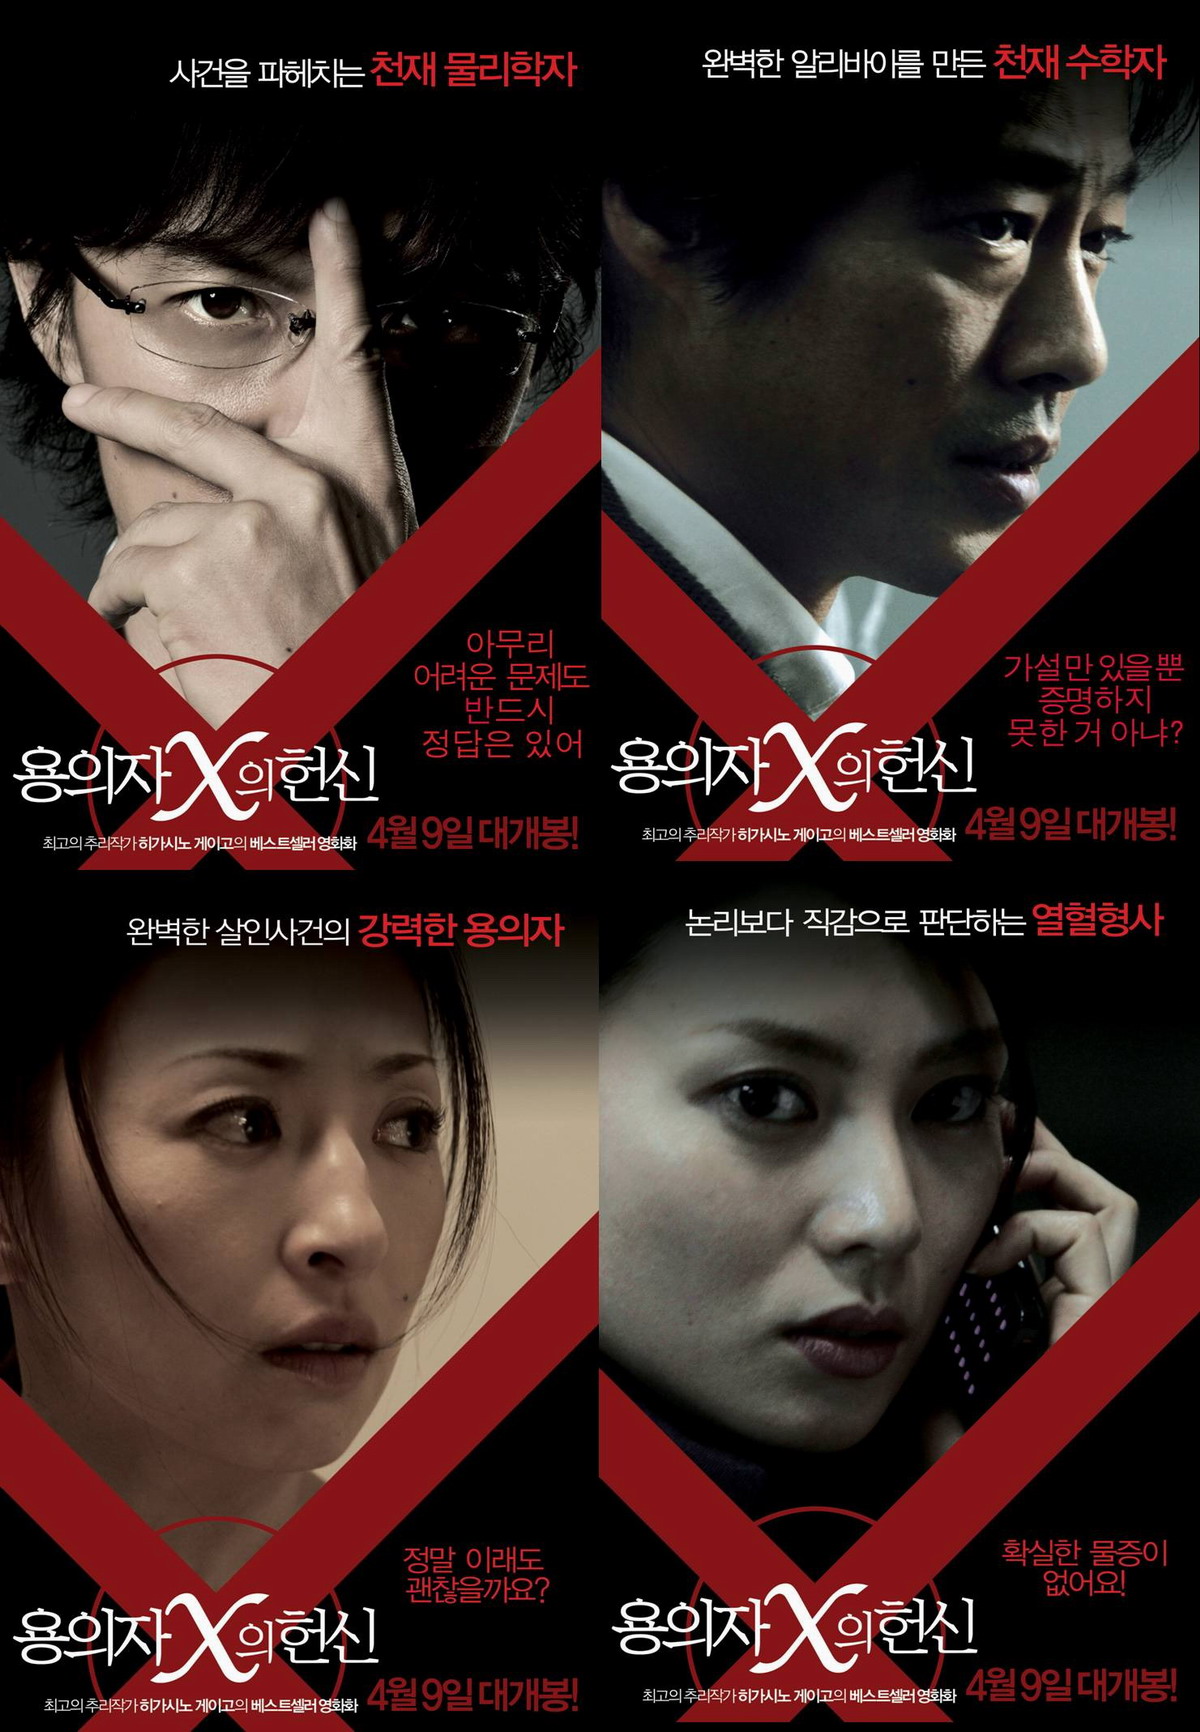 《嫌疑人x的献身》是一部由西谷弘导演,福田靖编剧,福山雅治,柴崎幸